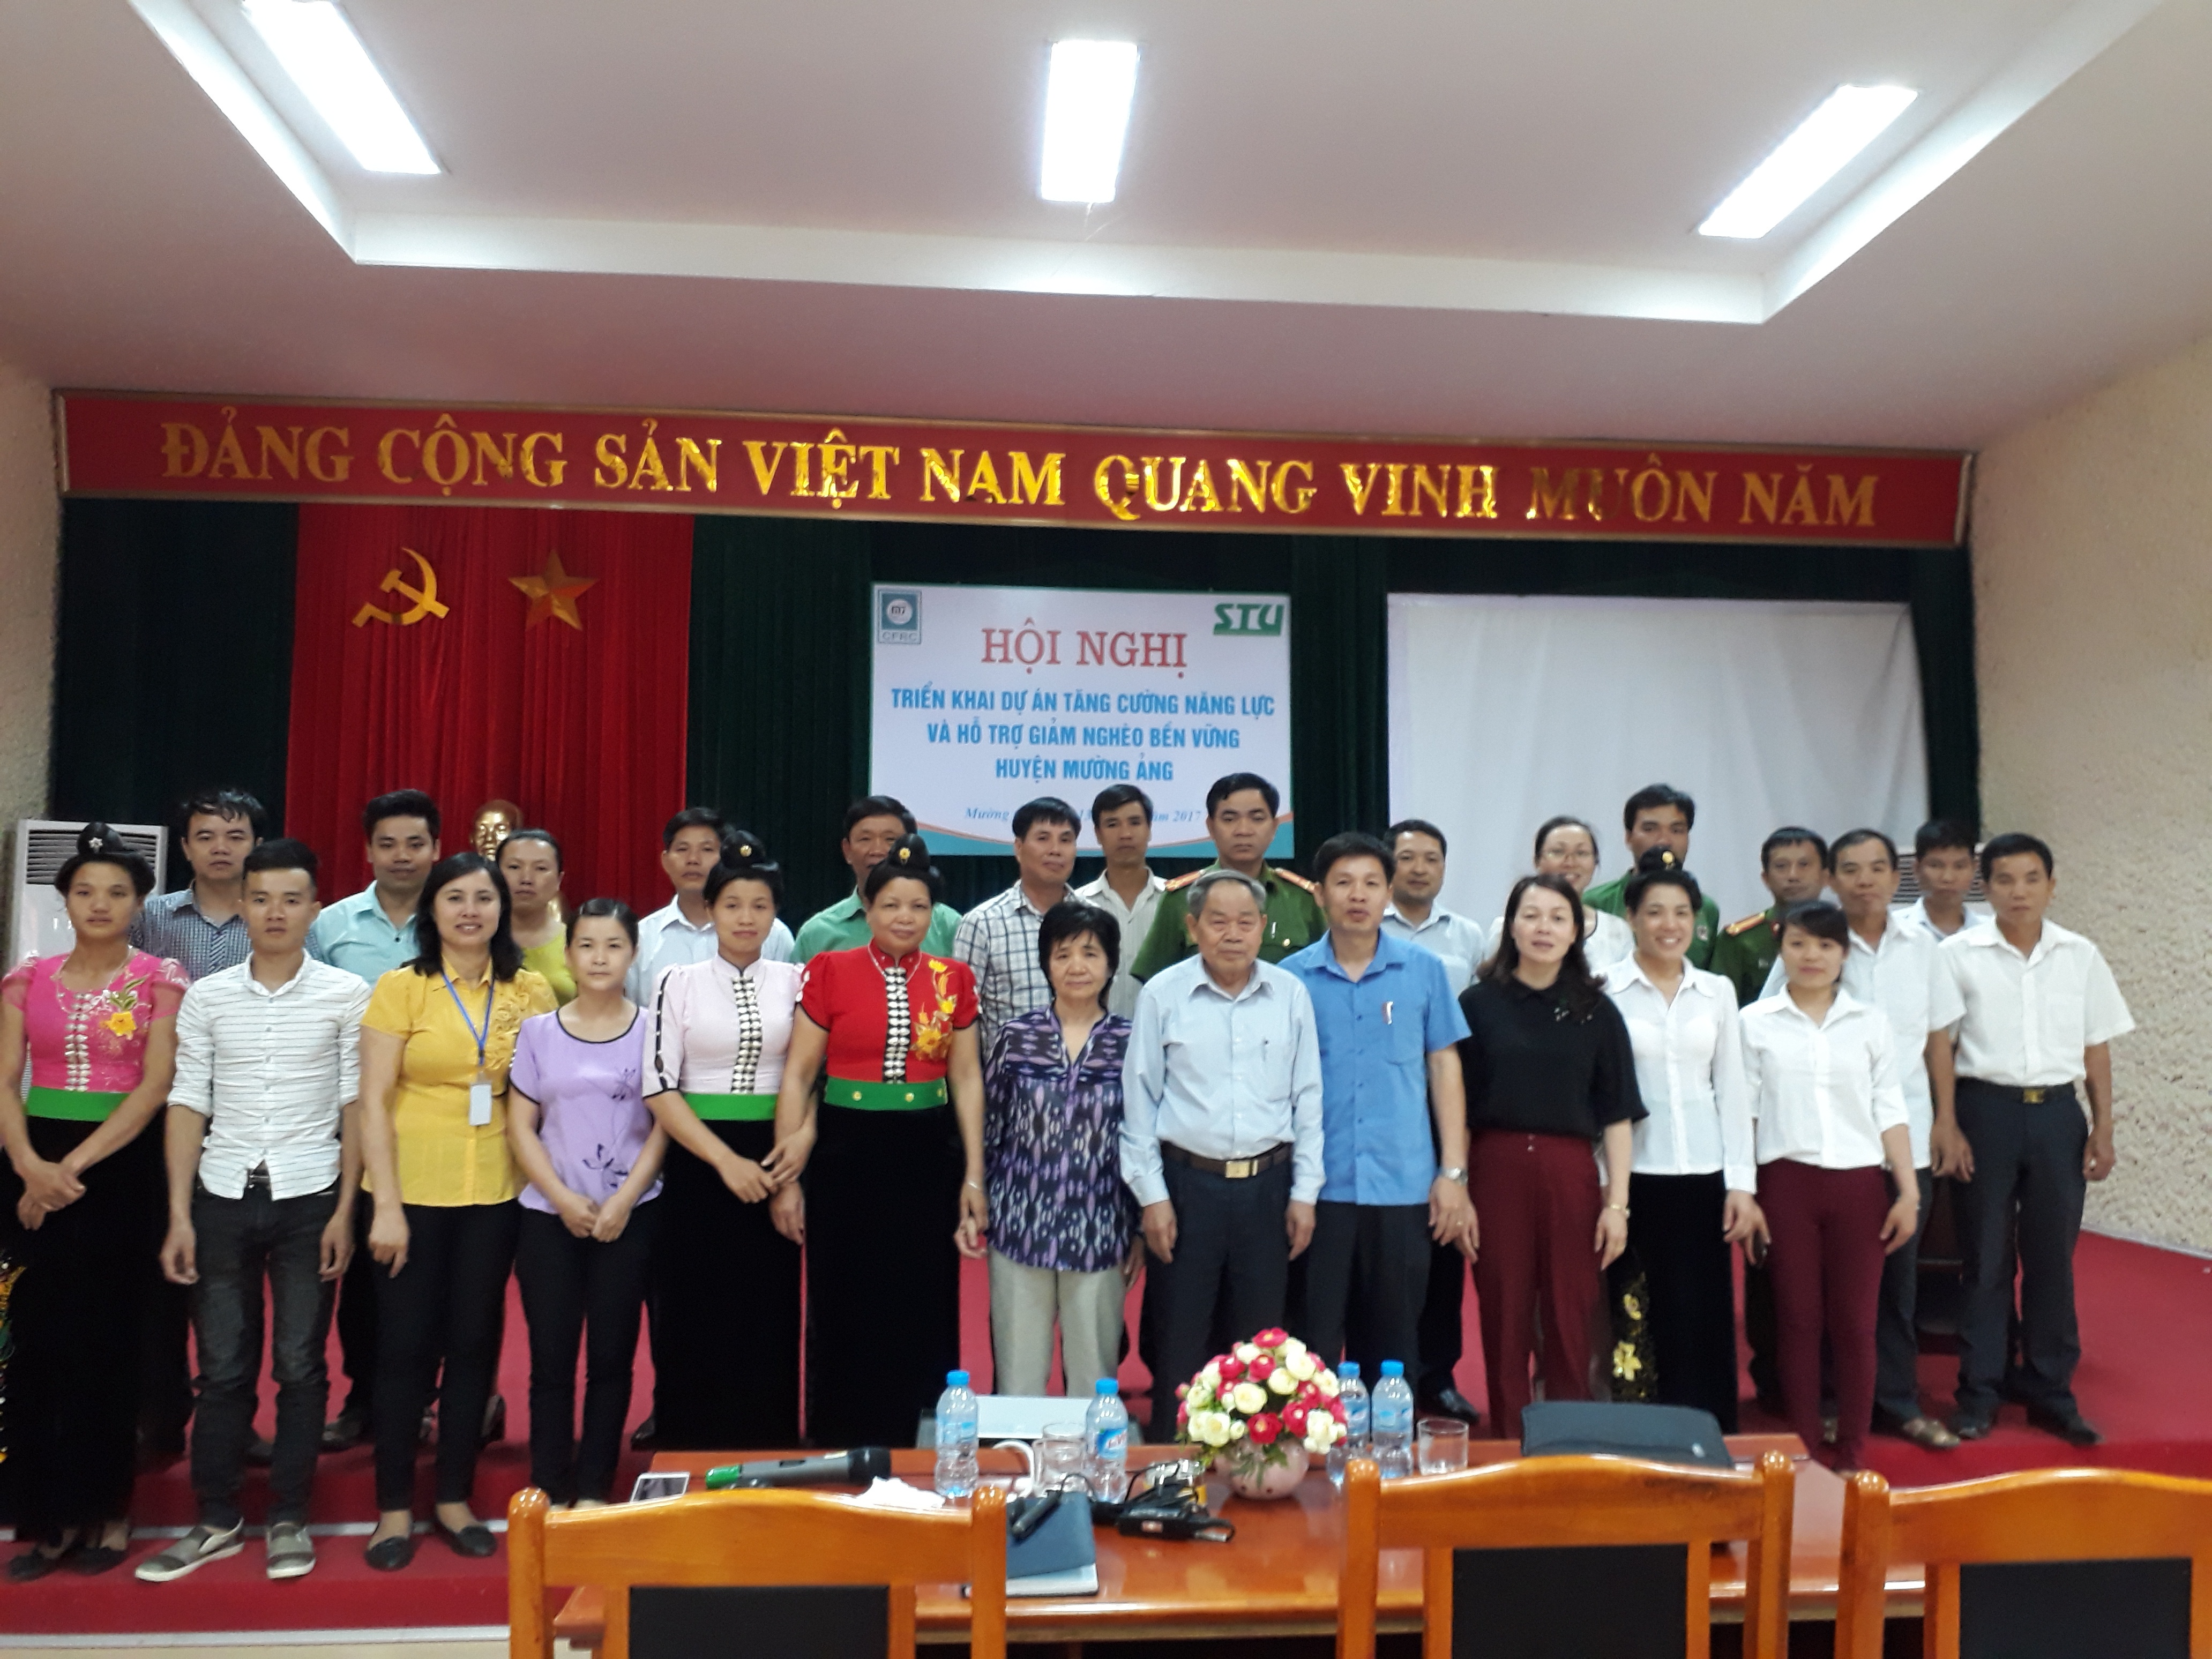 Mở rộng dự án “Tăng cường năng lực và hỗ trợ giảm nghèo bền vững” tại  huyện Mường Ảng, tỉnh Điện Biên